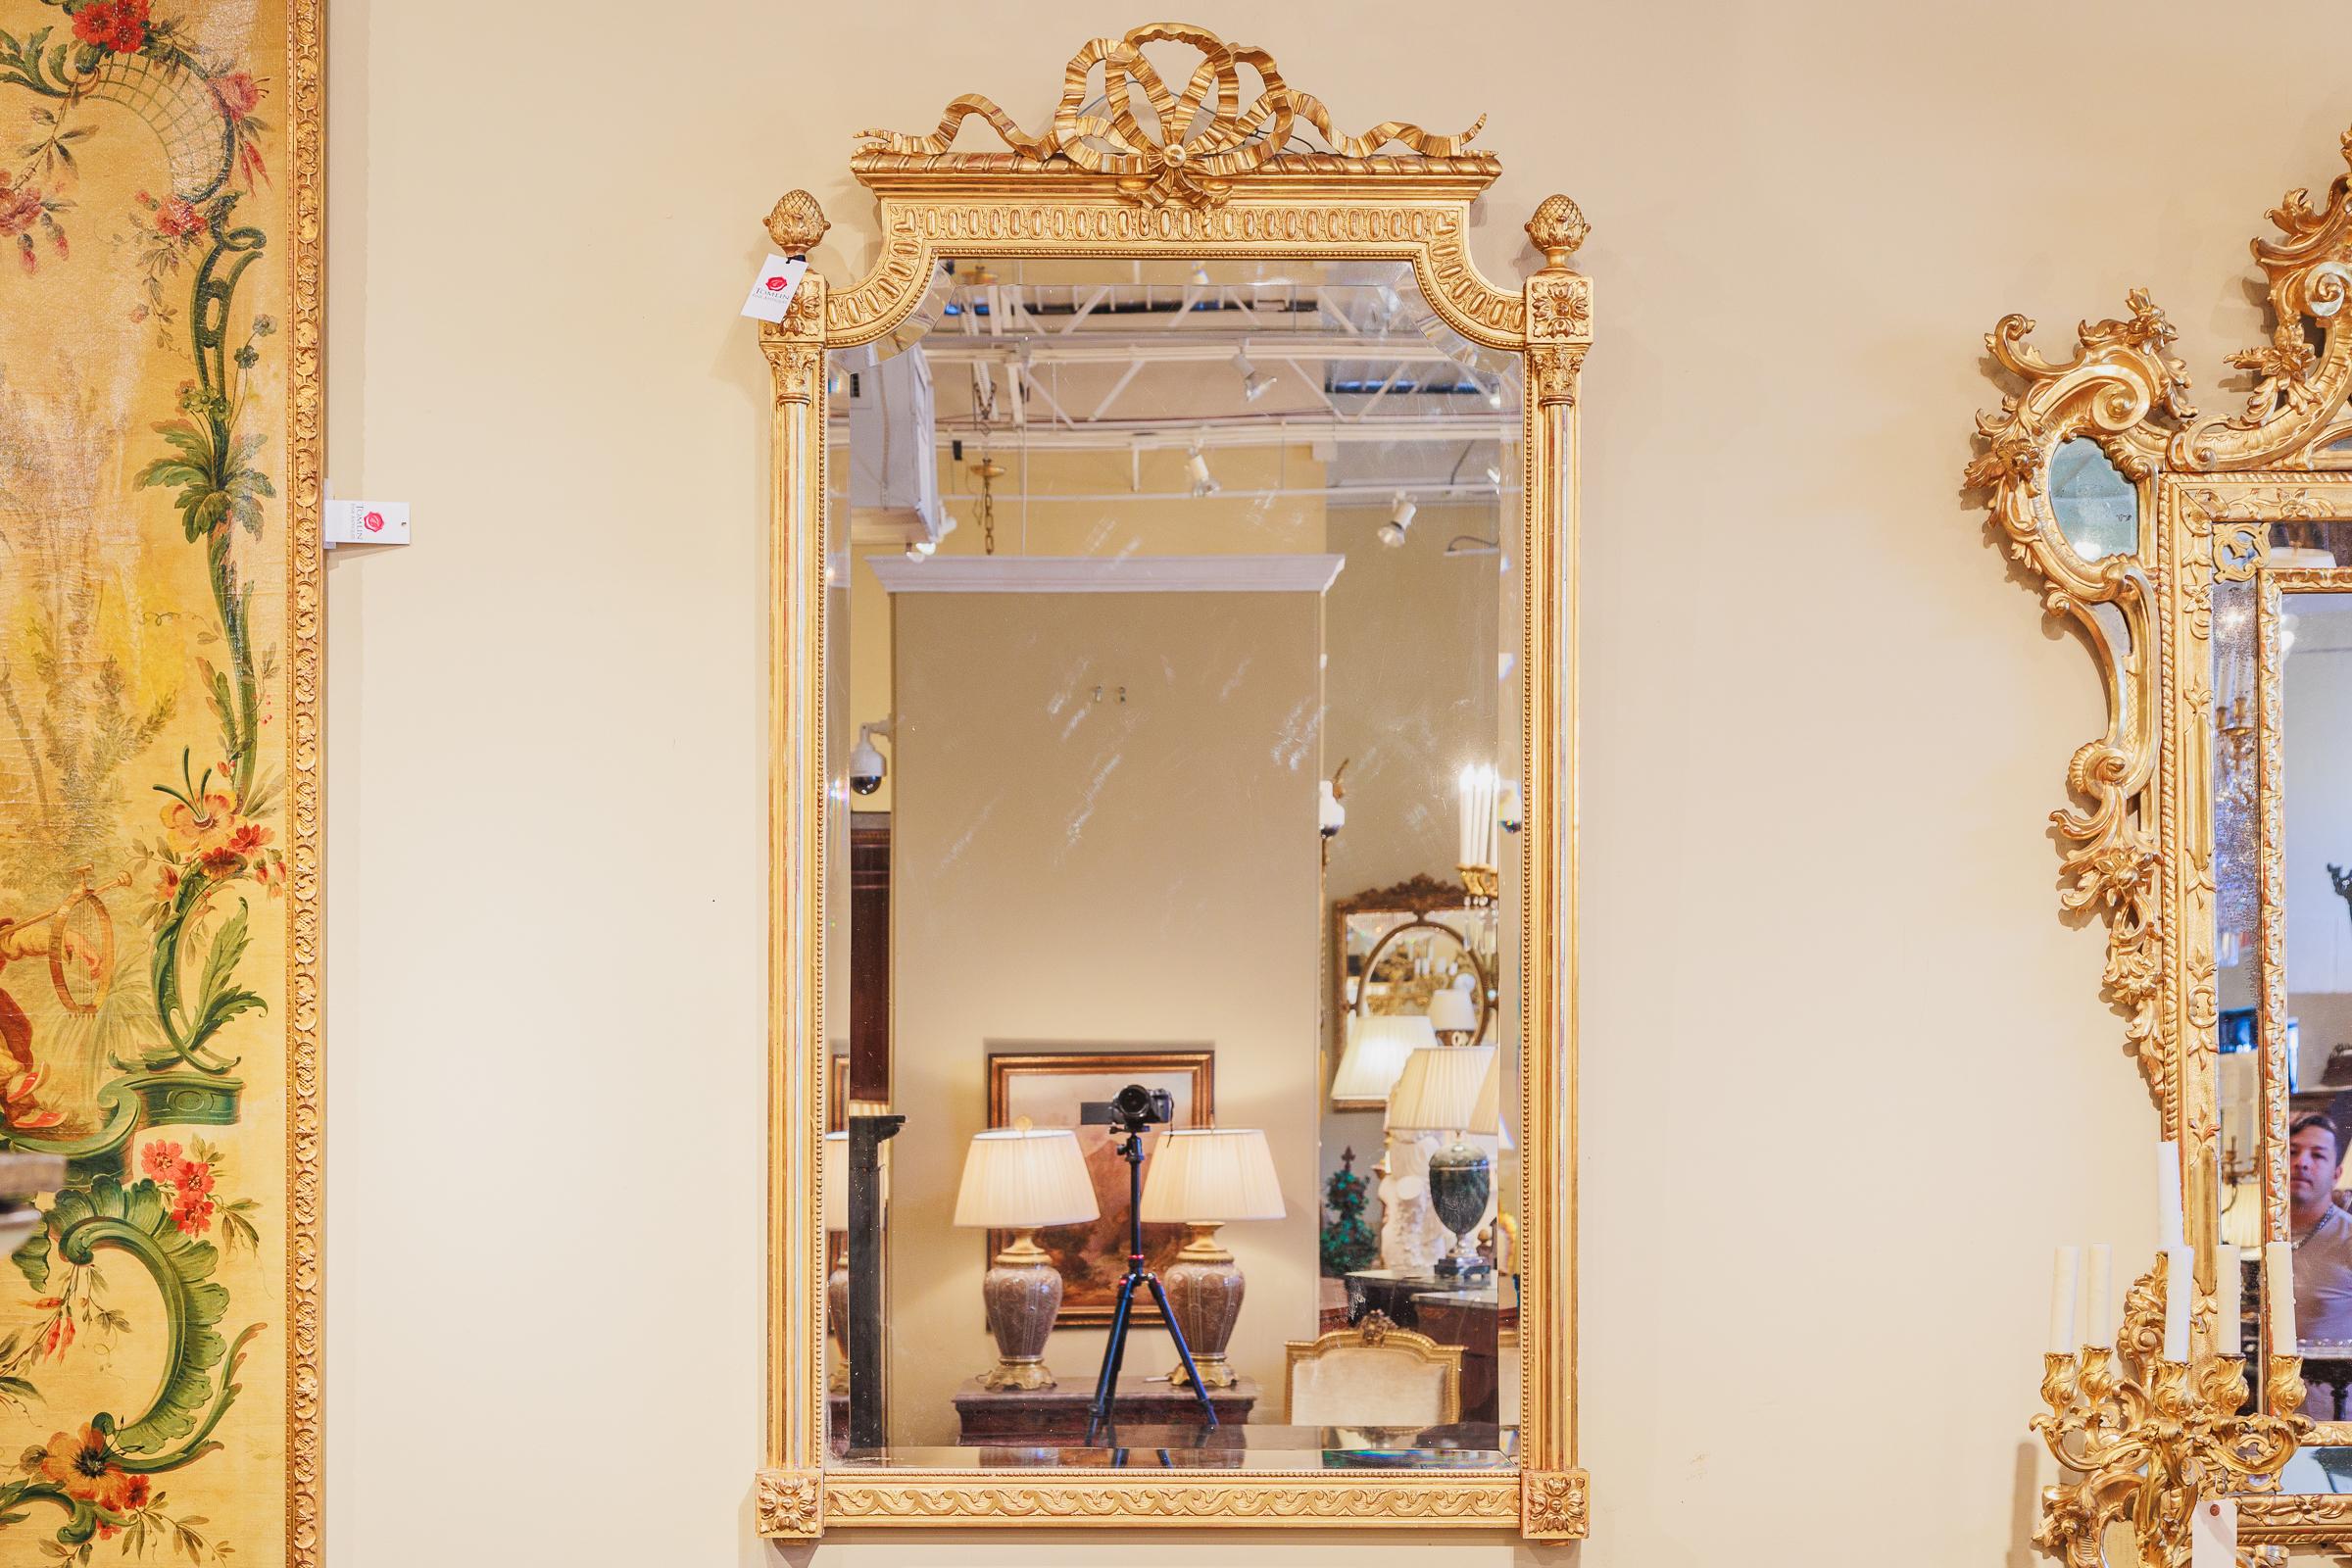 Eine feine 19. Jahrhundert Louis XVI Feuer vergoldet Hand geschnitzt feinen Spiegel, schöne Qualität mit feinen Quecksilber Vergoldung. 